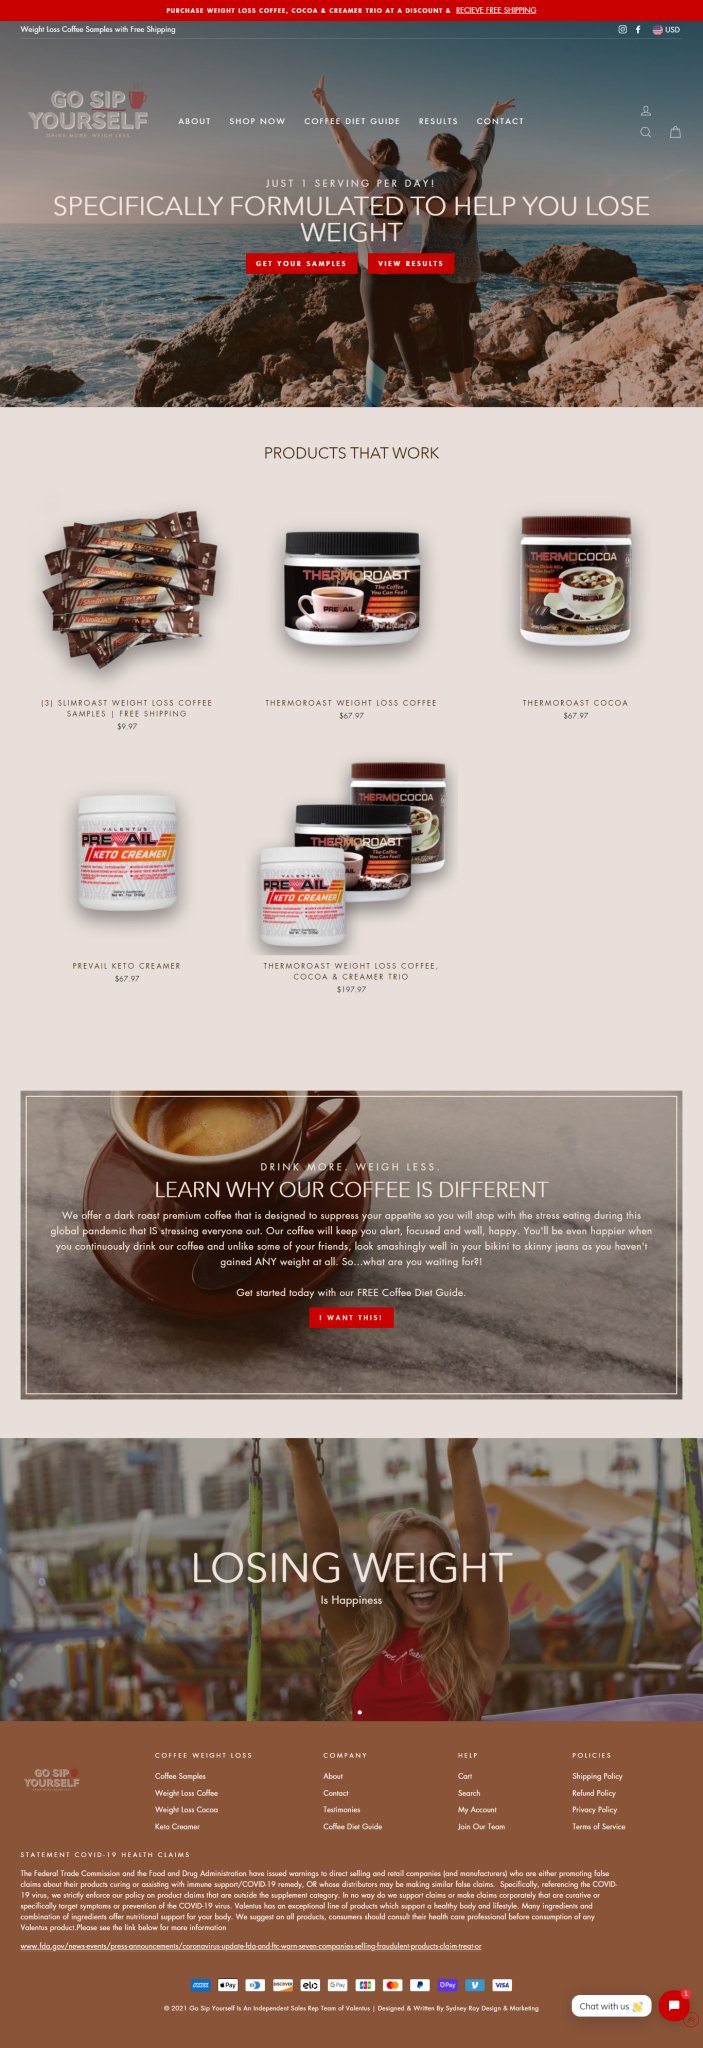 Weightloss Coffee Website - Blueprint To Success